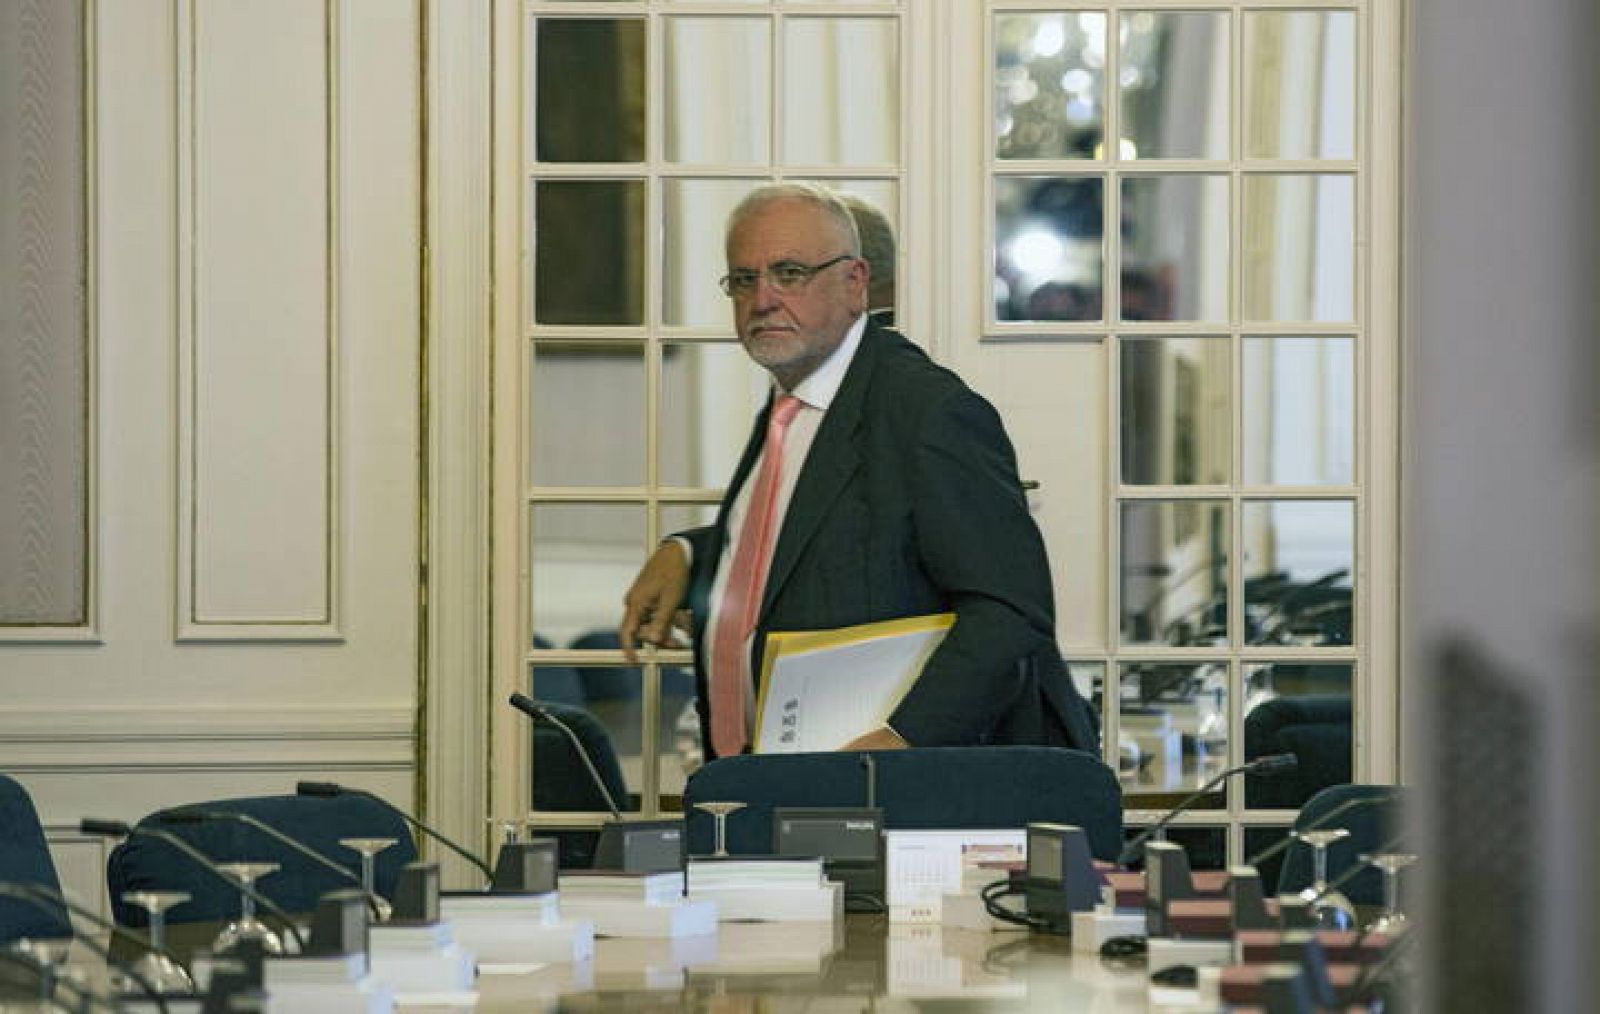 El presidente de Les Corts Valencianes, Juan Cotino, tras la reunión de la mesa de Les Corts en la que ha anunciado su renuncia al cargo.